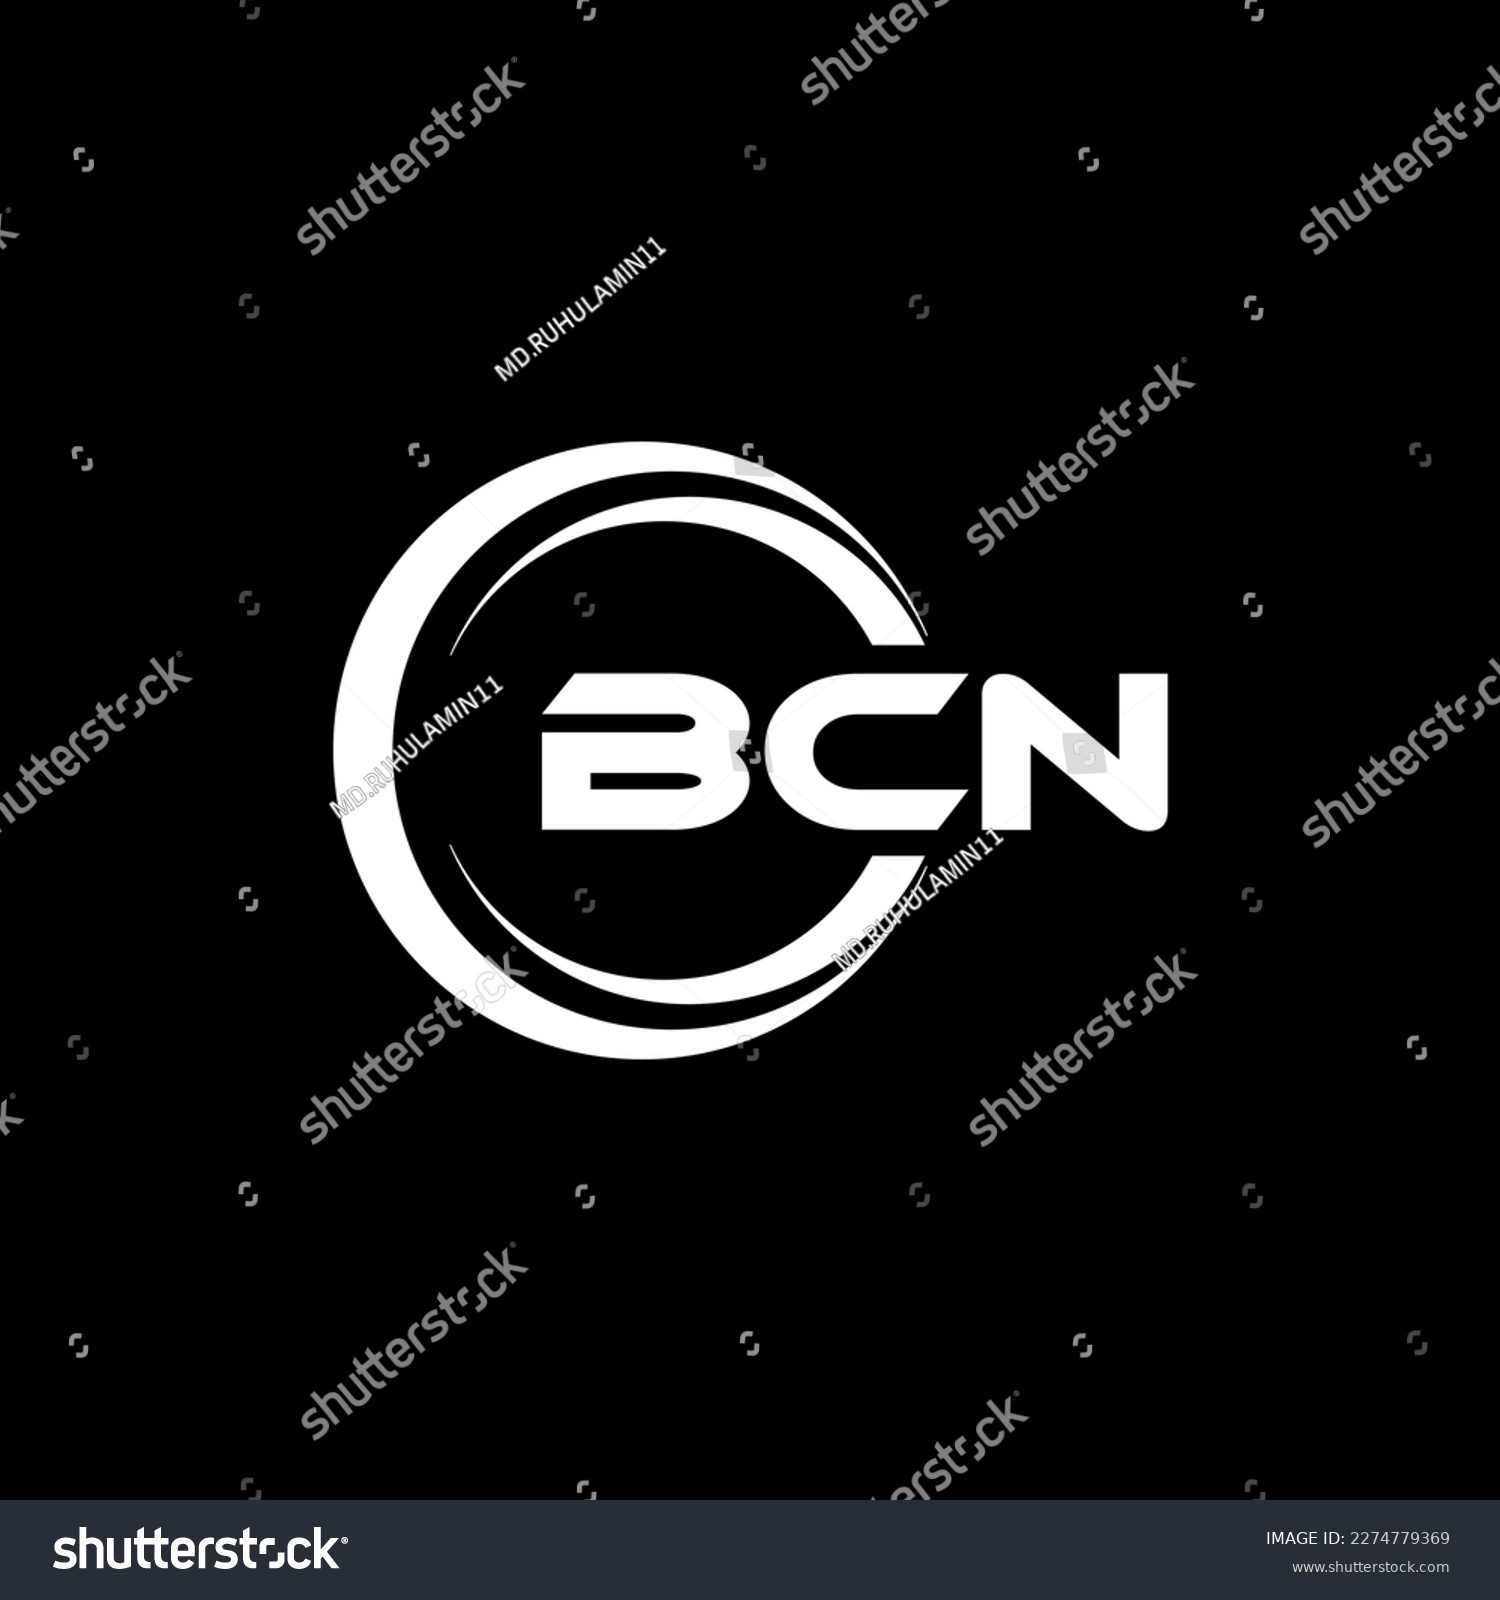 SVG of BCN letter logo design in illustration. Vector logo, calligraphy designs for logo, Poster, Invitation, etc. svg